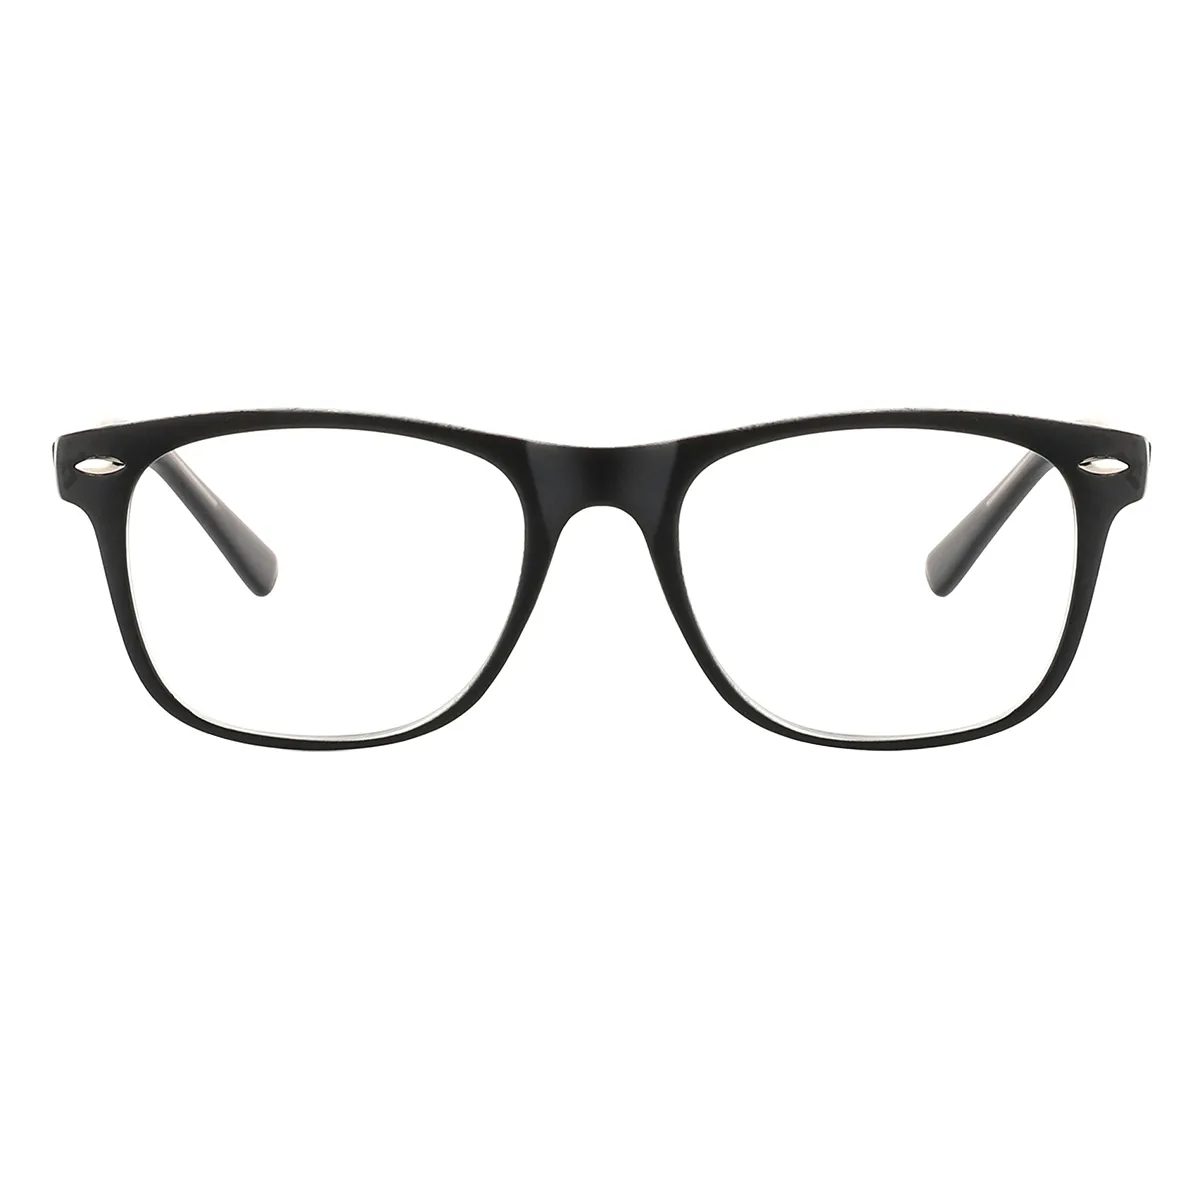 Sakae - Square Black-transparent Reading glasses for Men & Women